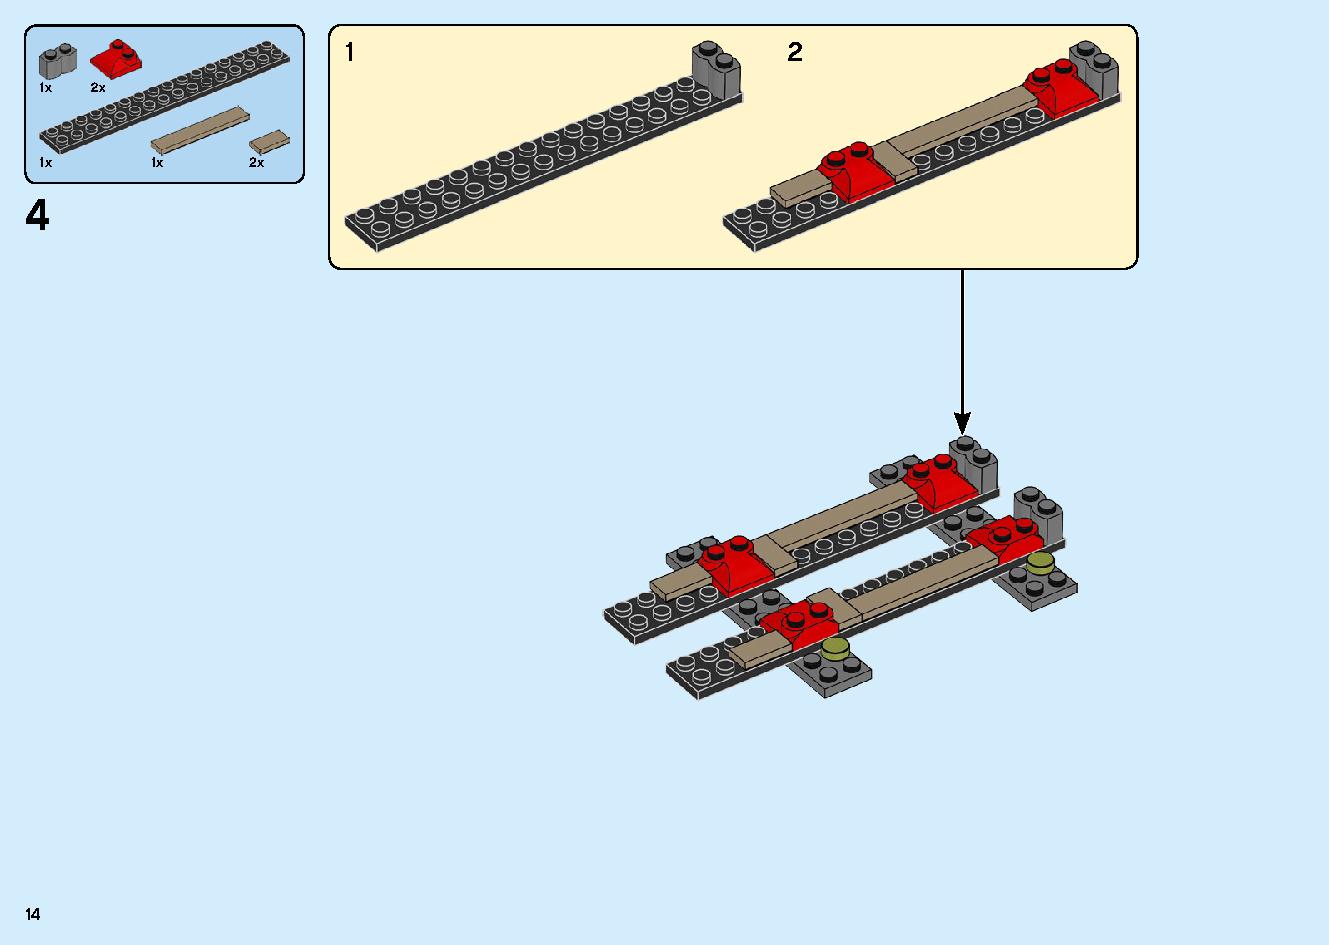 陸上戦艦バウンティ号 70677 レゴの商品情報 レゴの説明書・組立方法 14 page